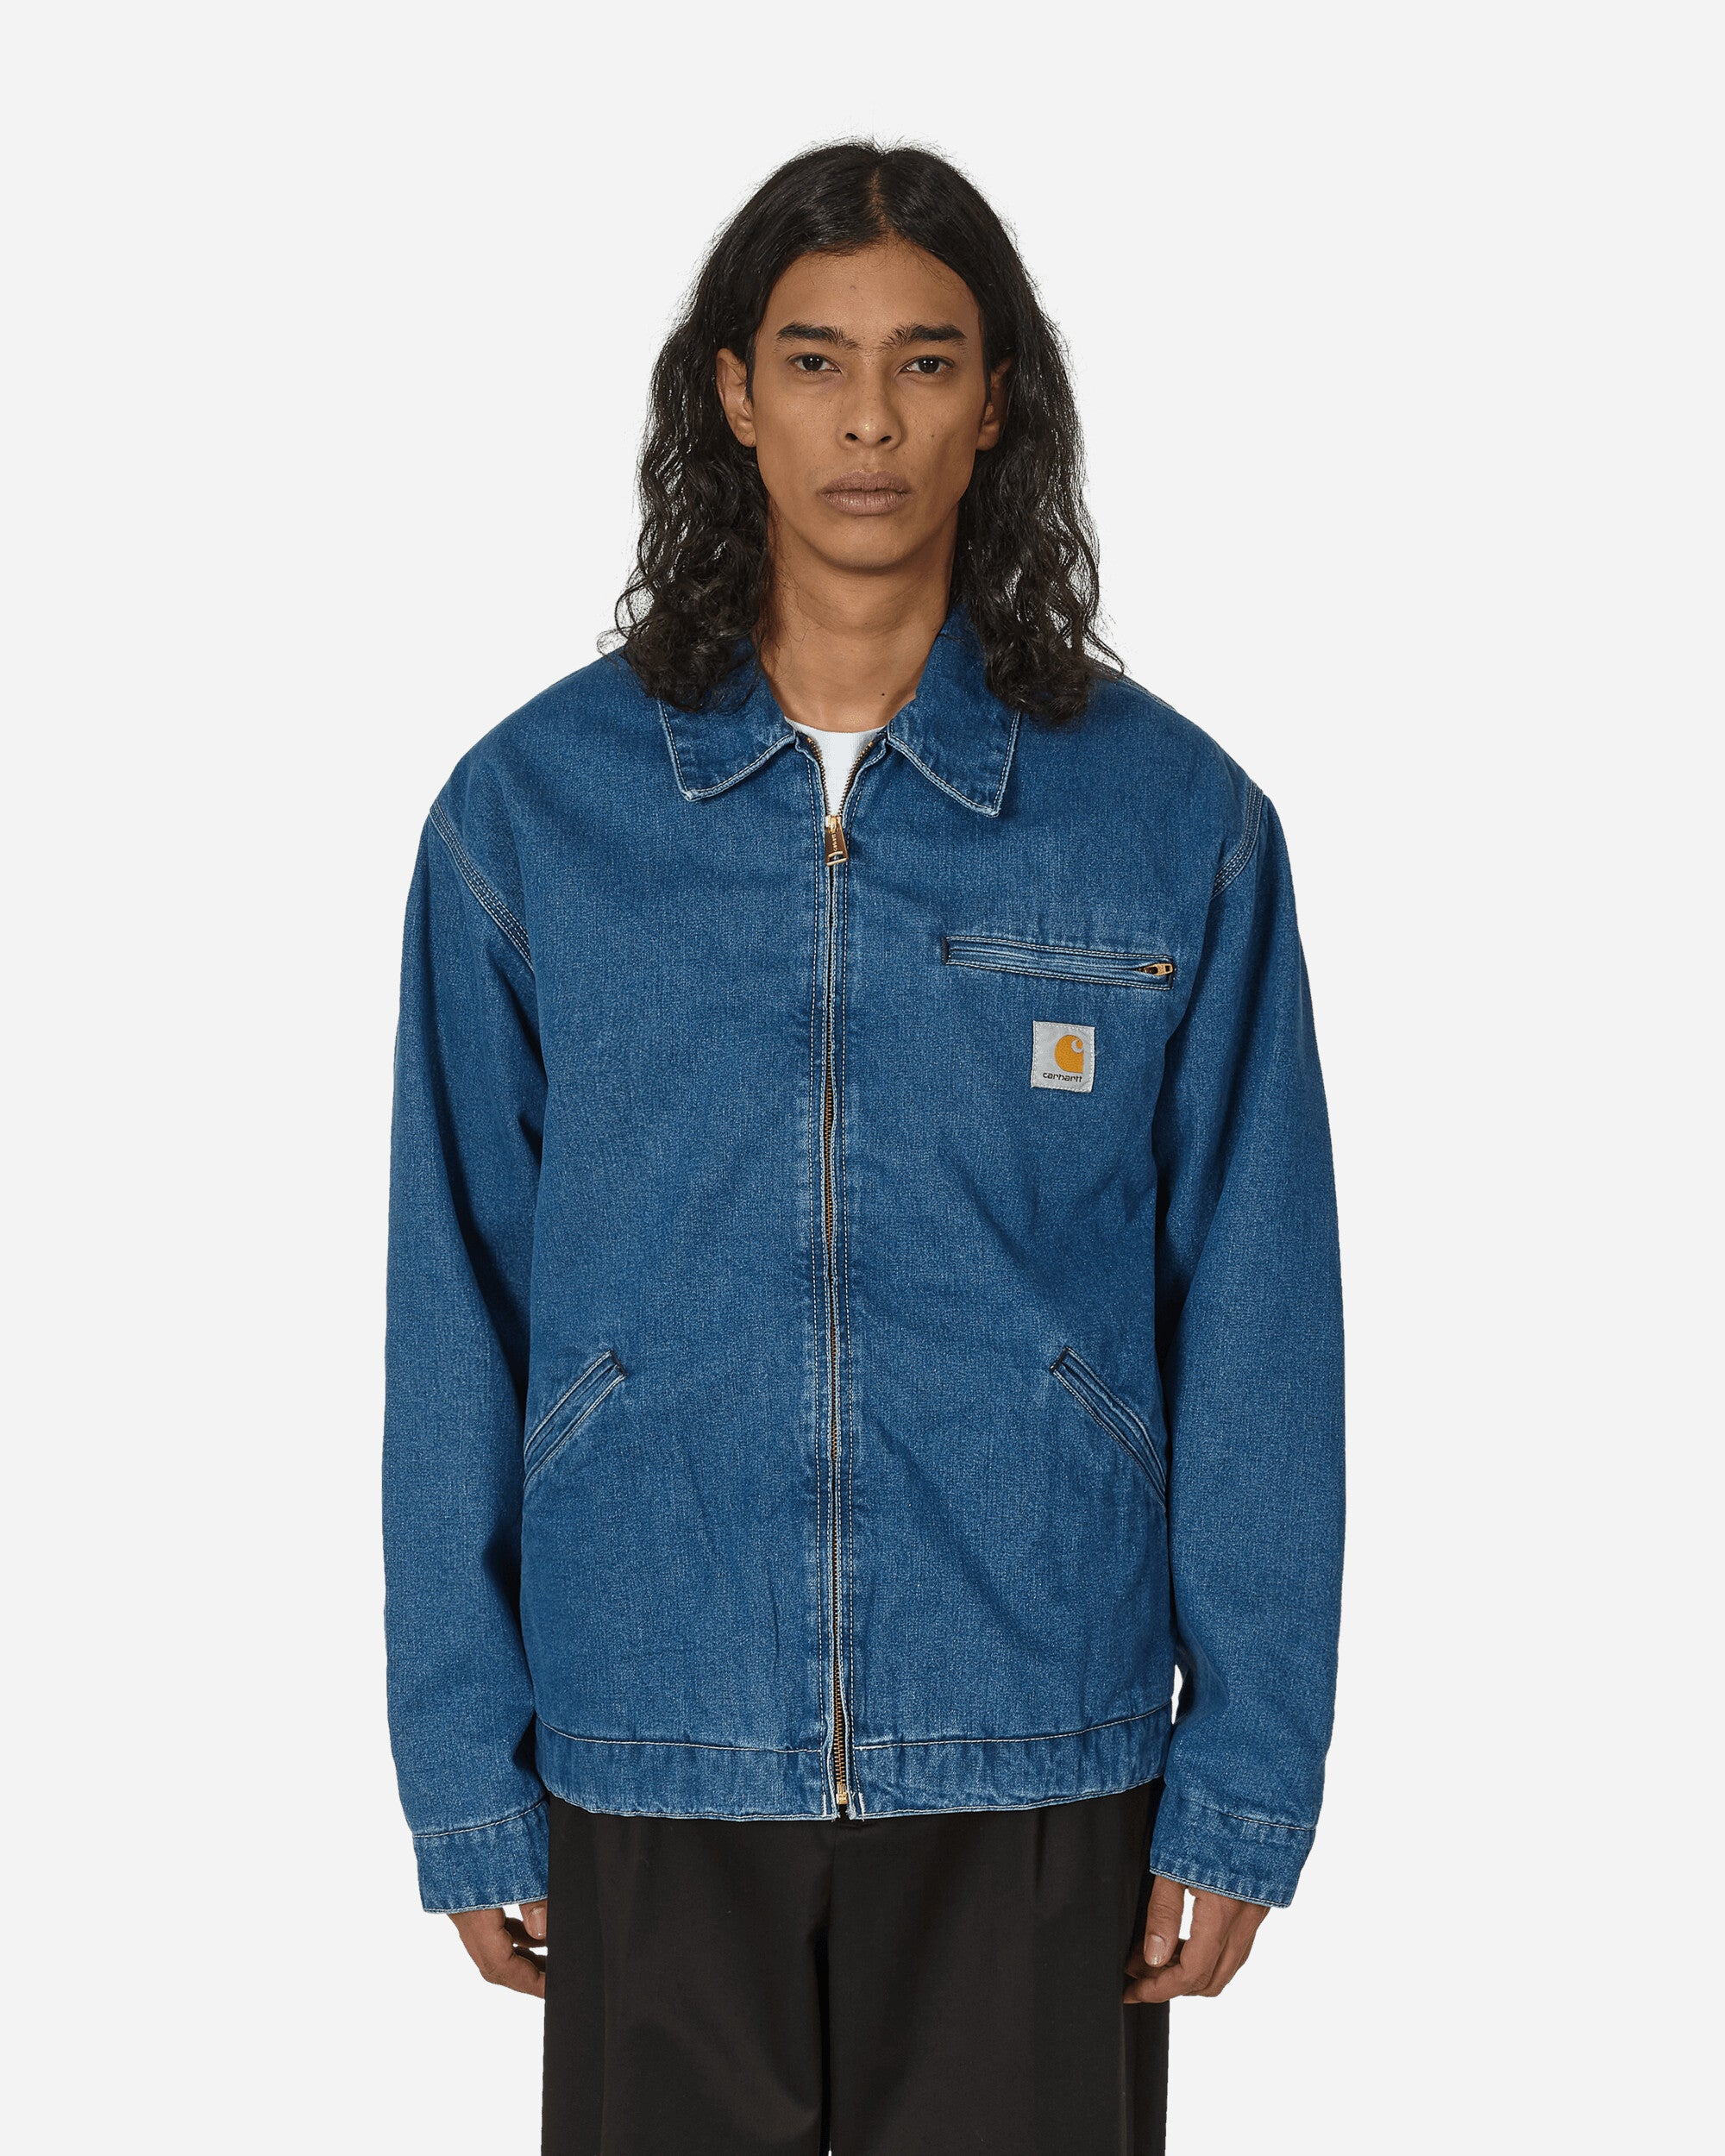 Carhartt WIP denim jacket OG Detroit Jacket men's blue color I033039.106